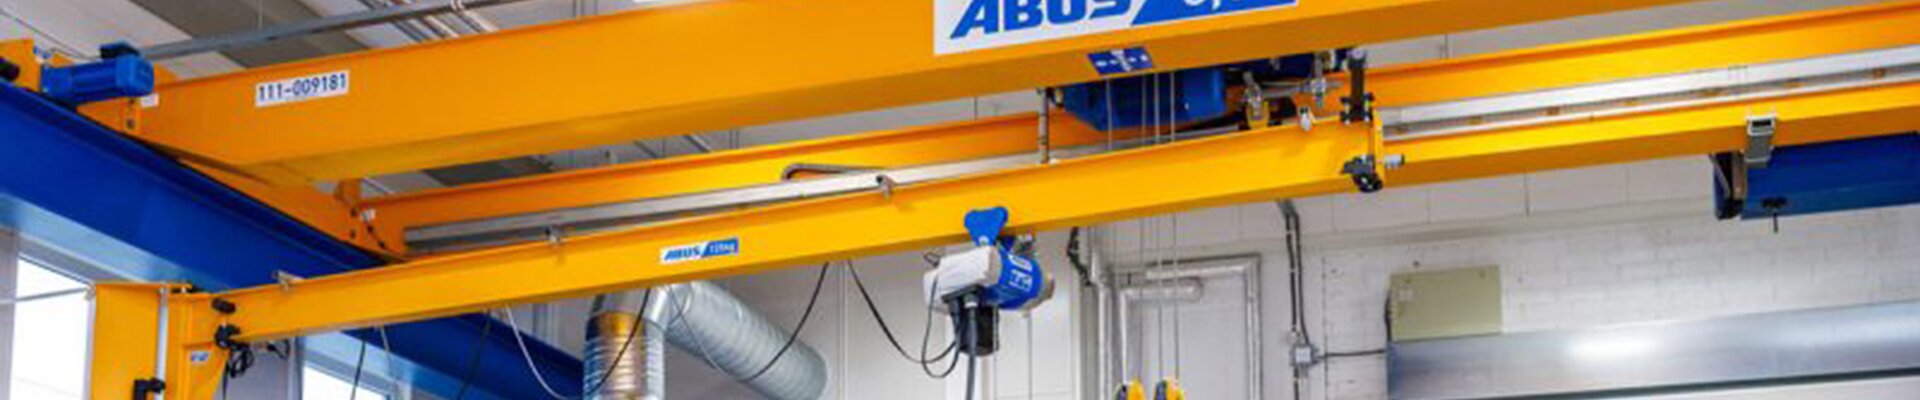 ABUS Krane in Werkstatt der Firma Rotor Maskiner in Schweden